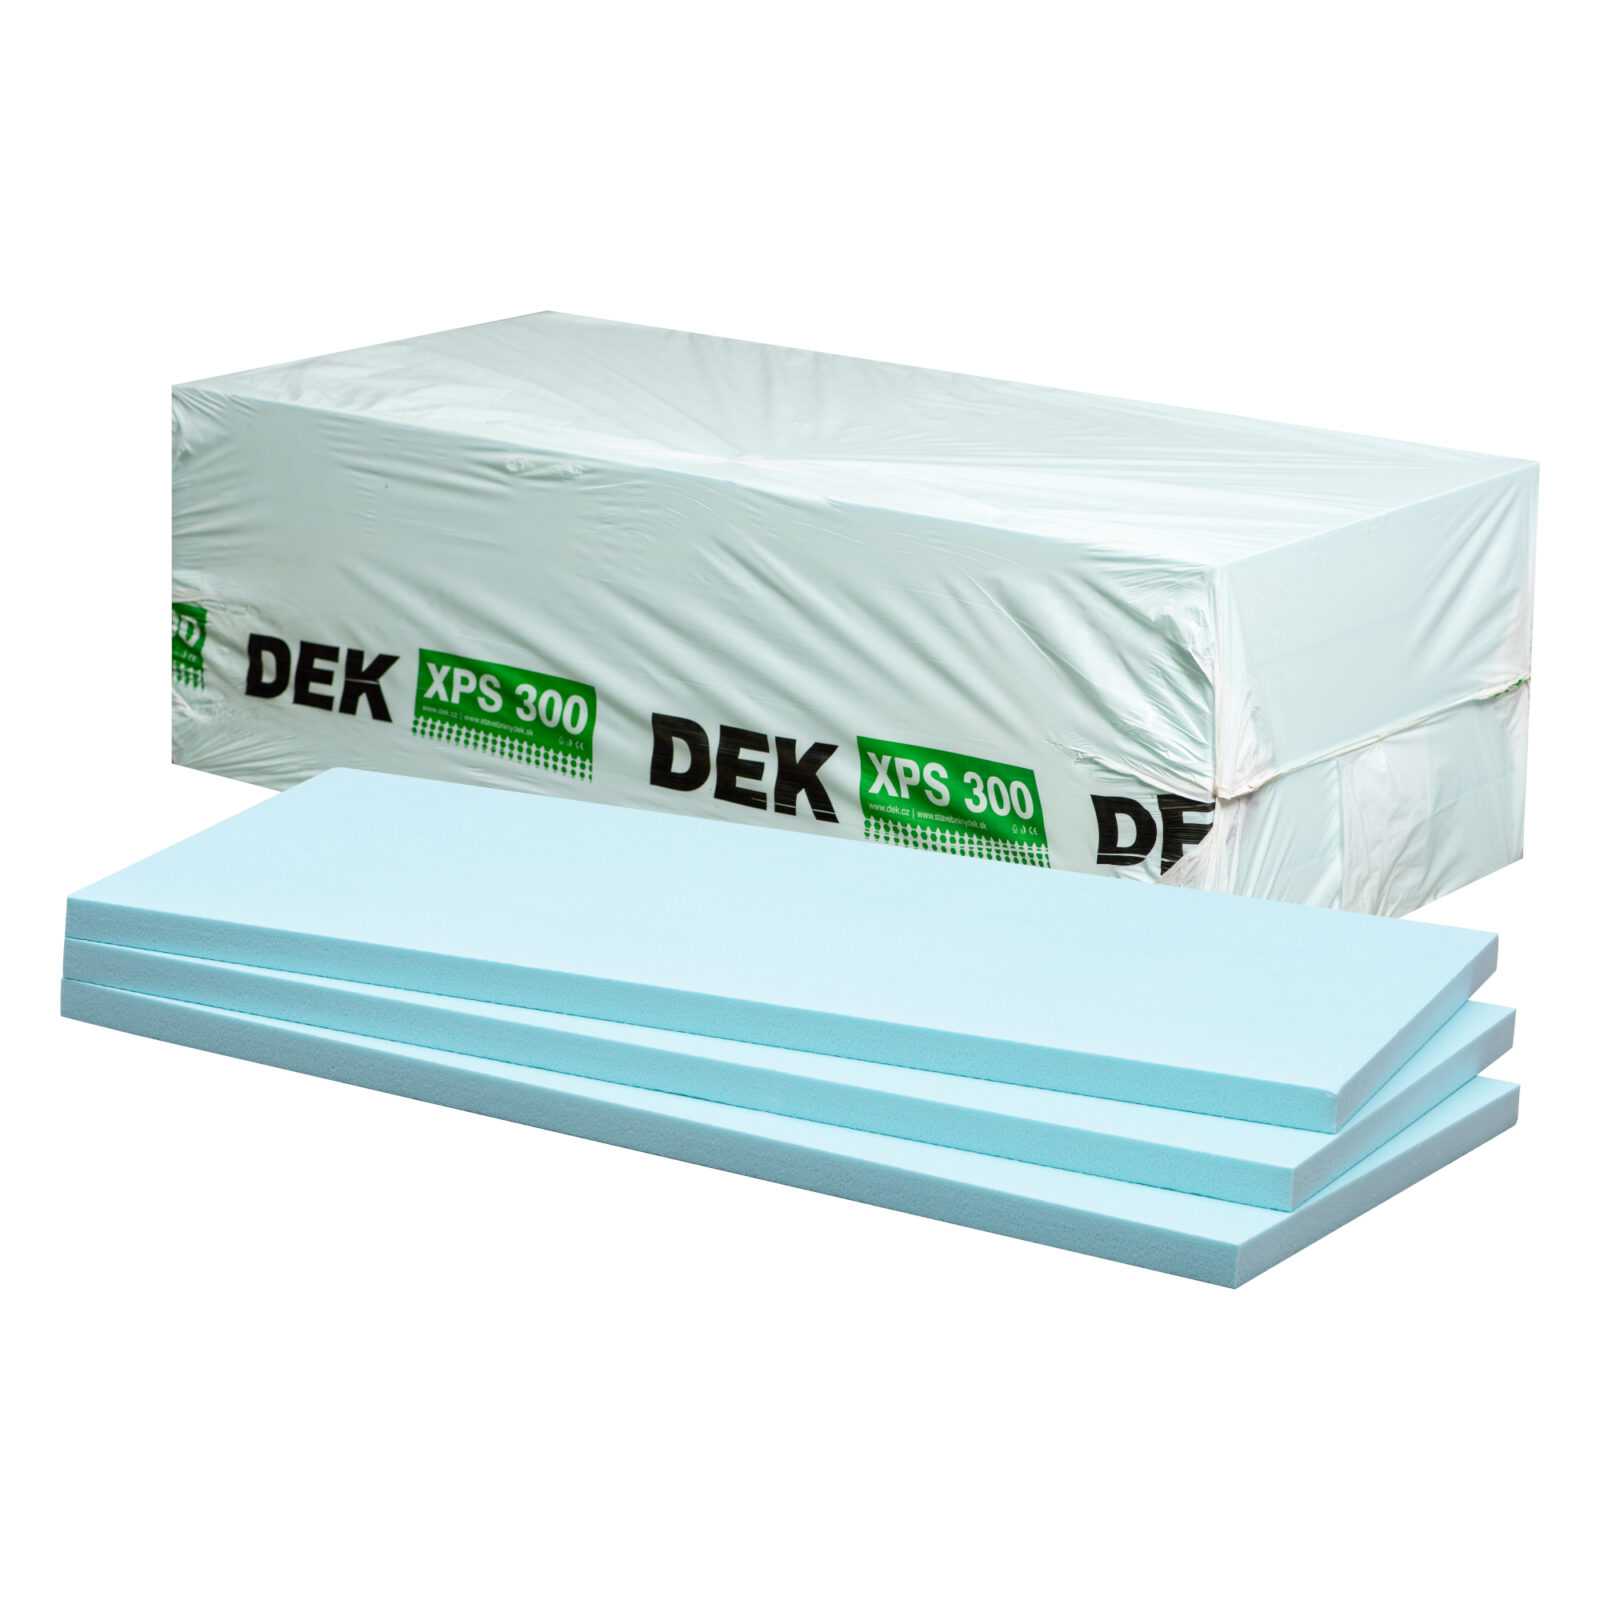 Tepelná izolace DEK XPS I 300 kPa 80 mm (3